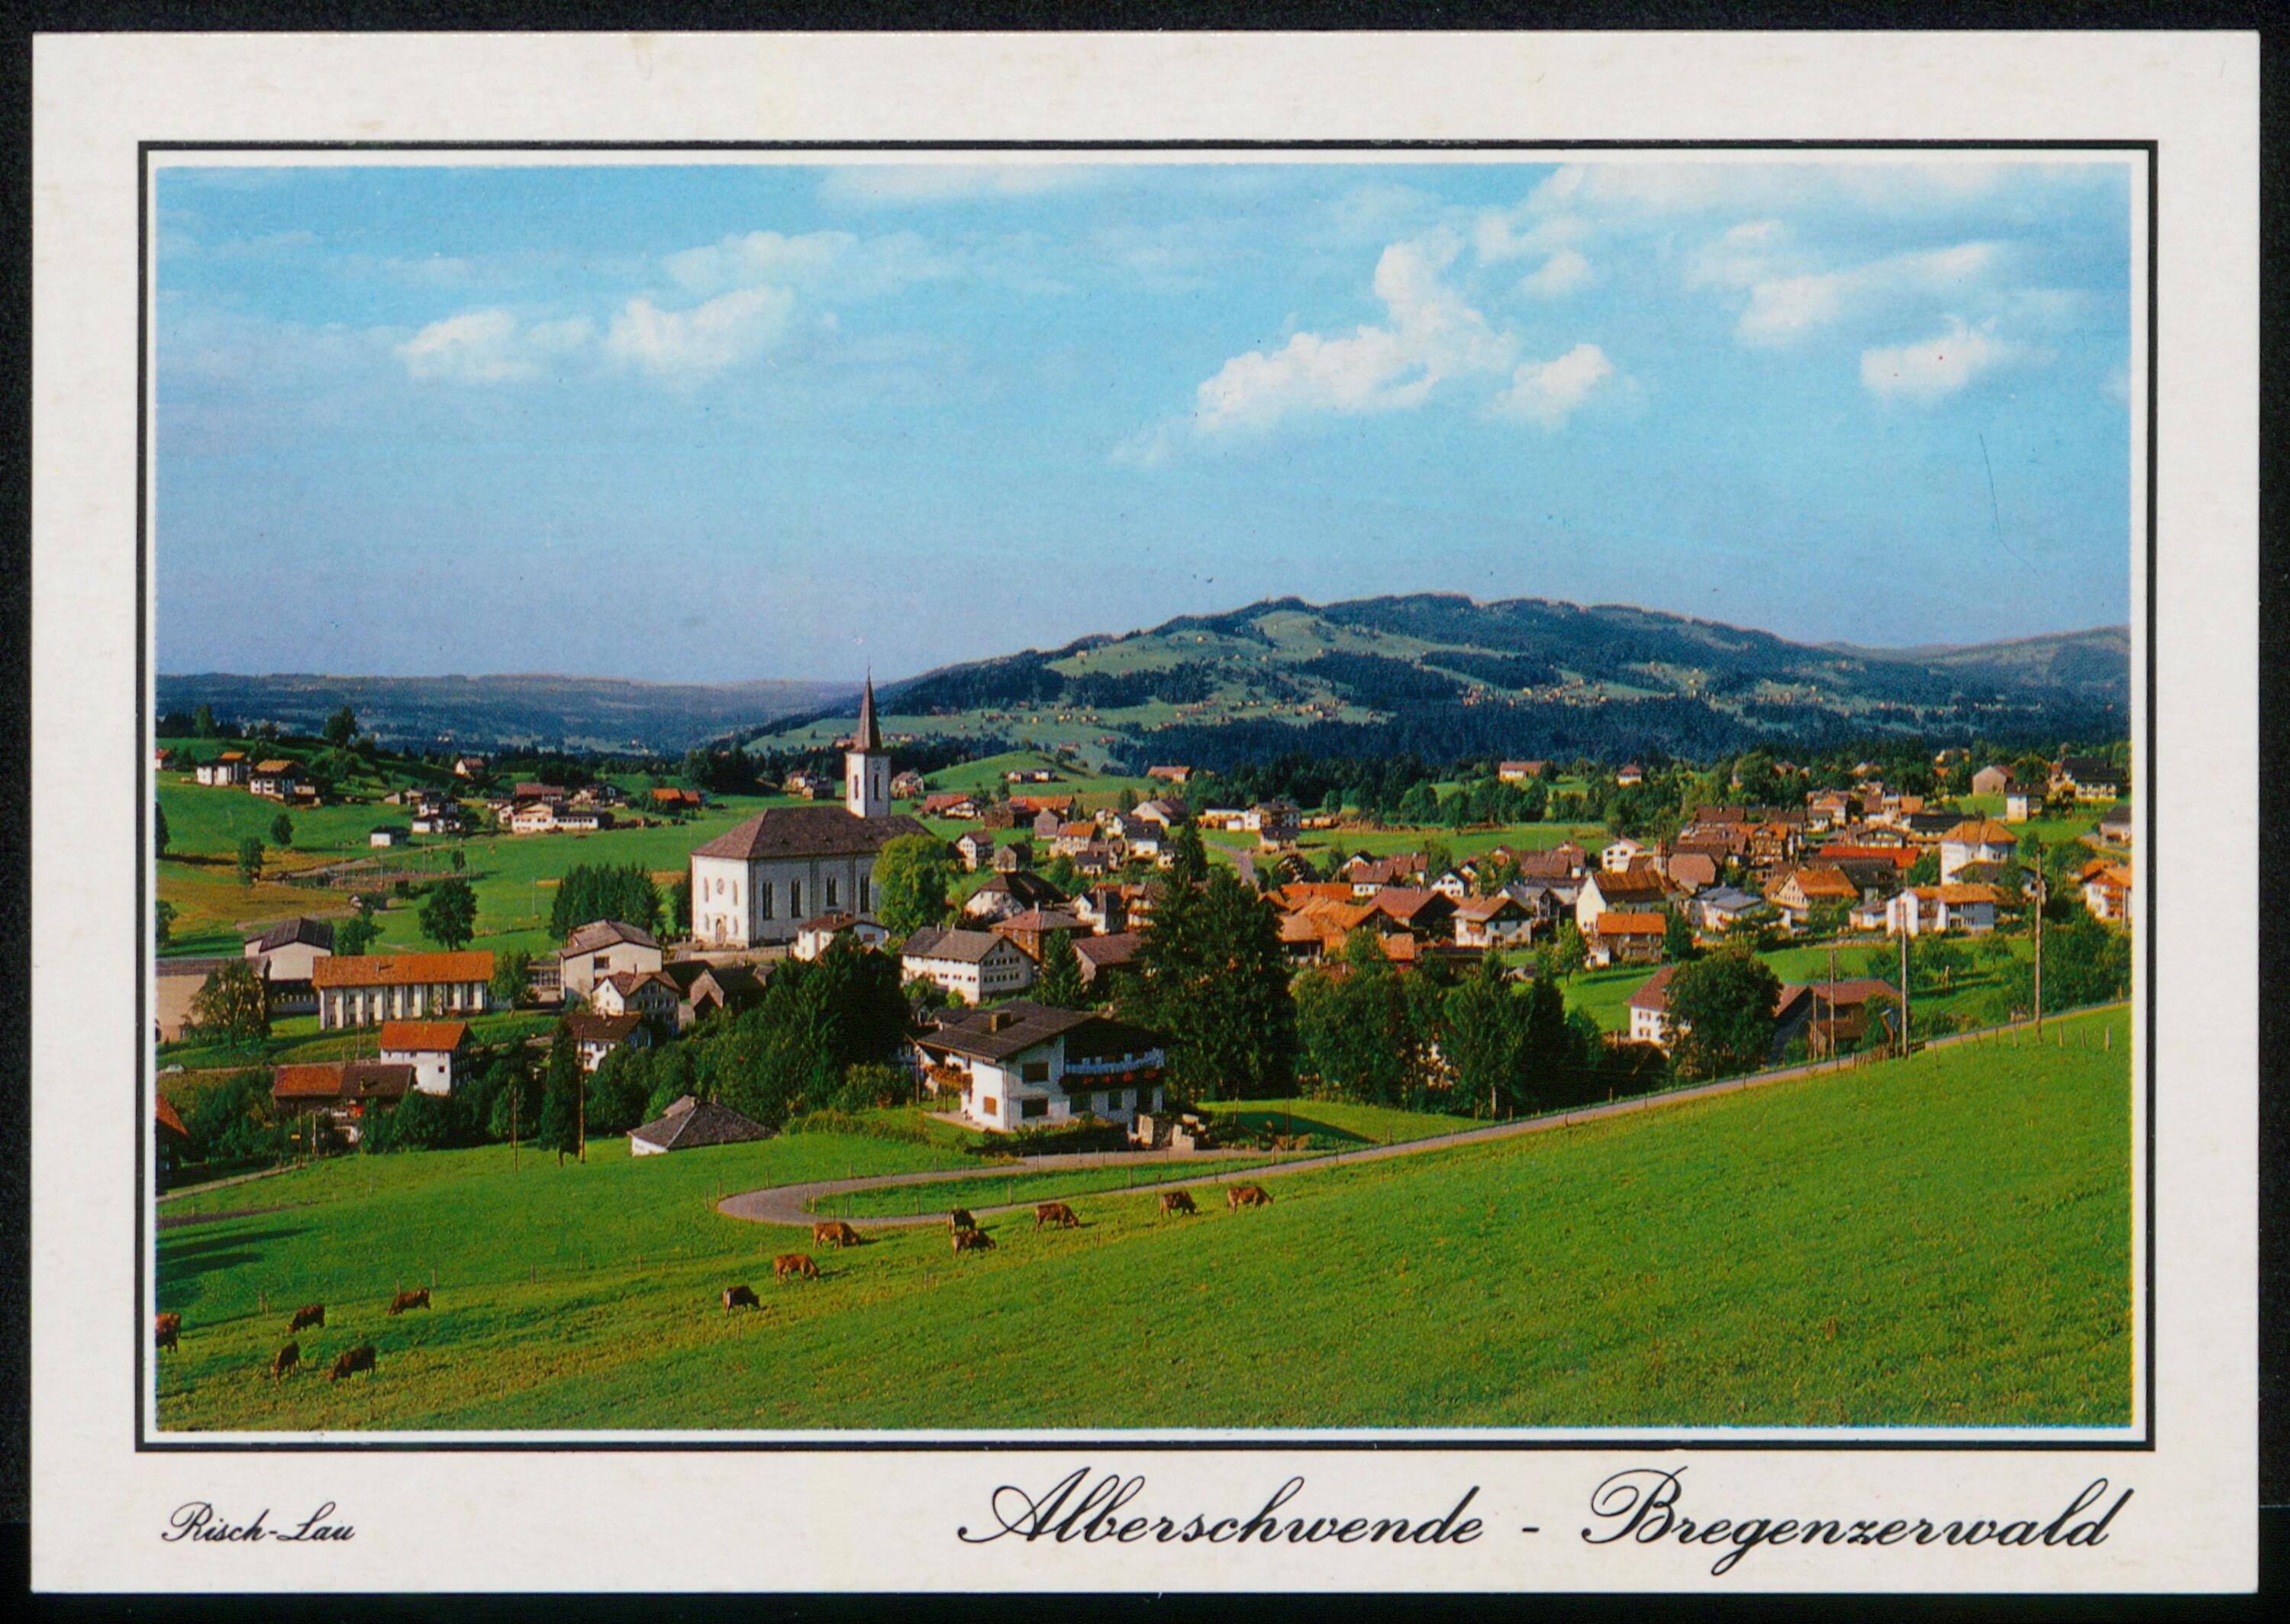 Alberschwende - Bregenzerwald></div>


    <hr>
    <div class=